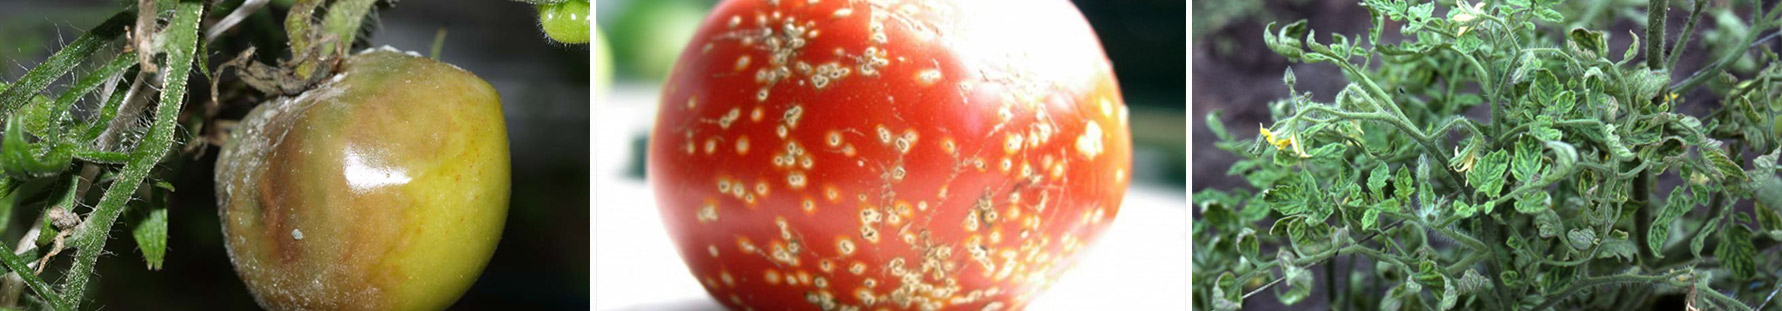 Хвороби помідорів